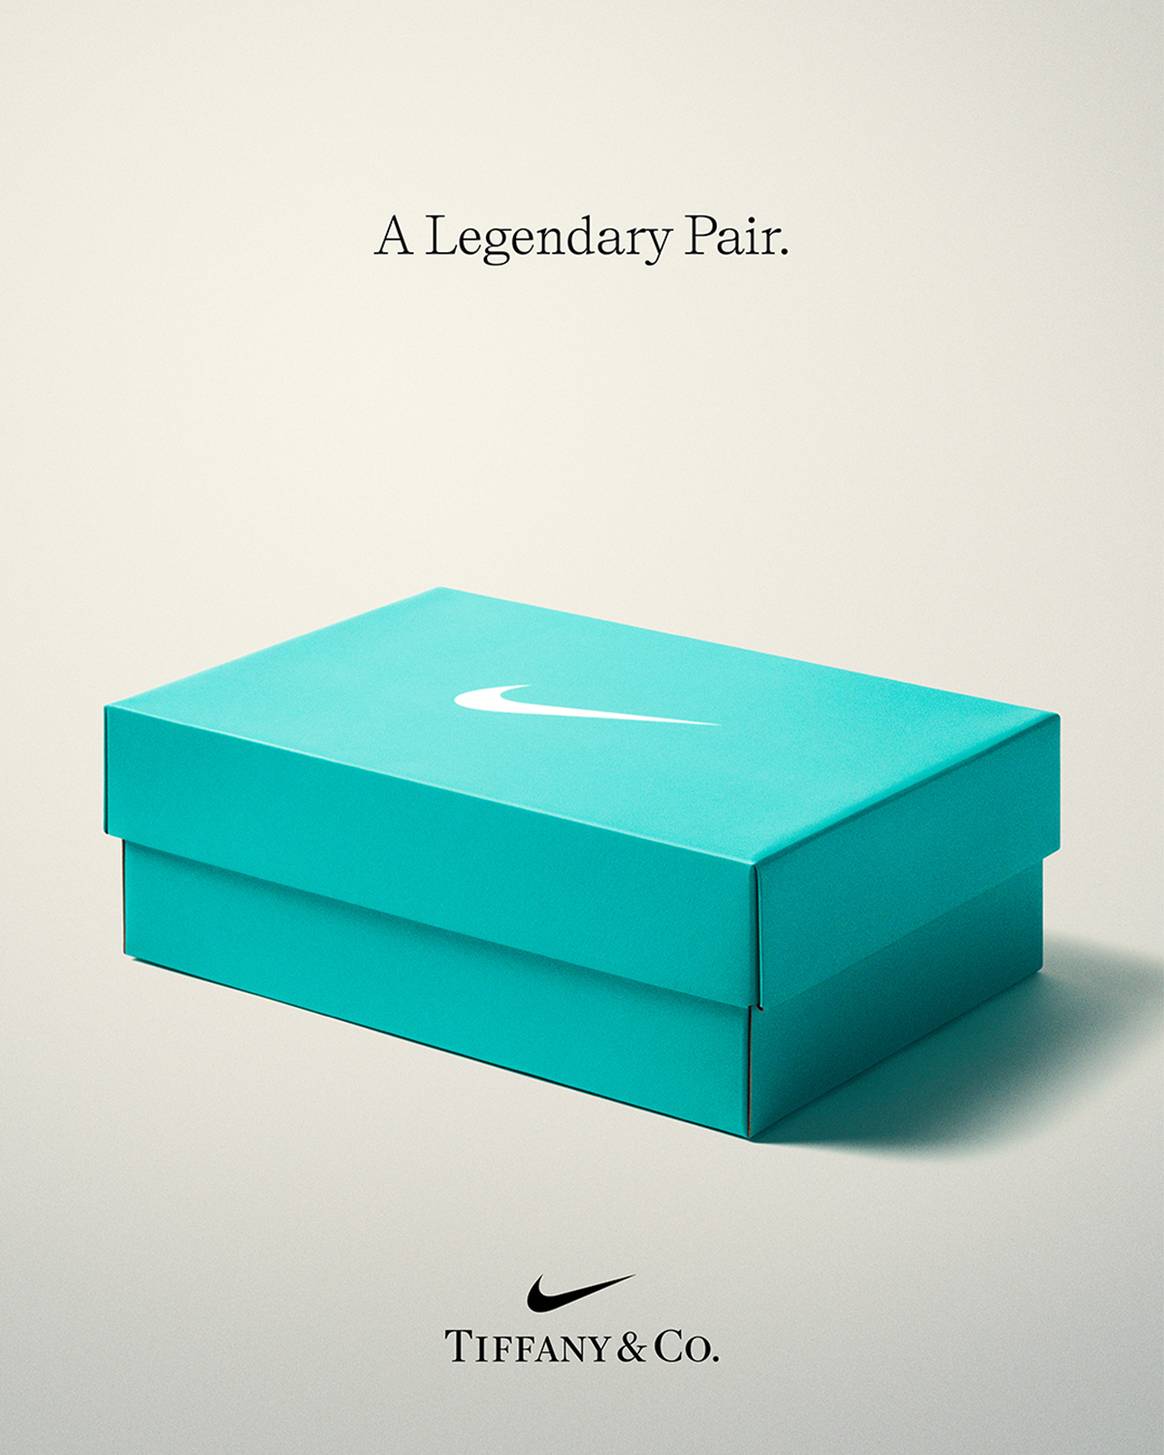 Photo Credits: Caja de Nike en color “Azul Tiffany”. Tiffany & co., página oficial de Facebook.